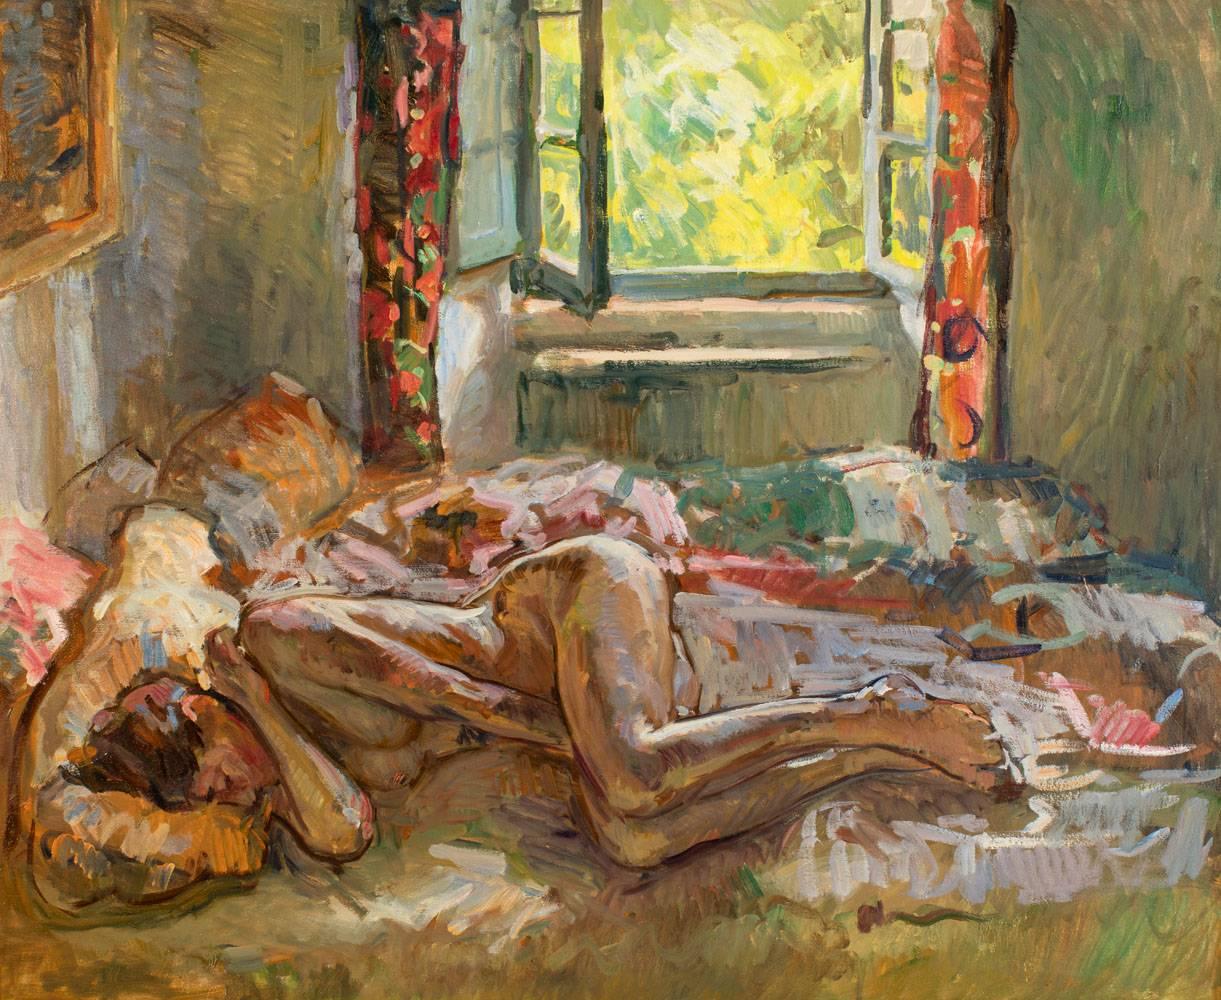 Ben Fenske Nude Painting – "Daydream" zeitgenössisches impressionistisches Gemälde, ruhender Akt, farbig